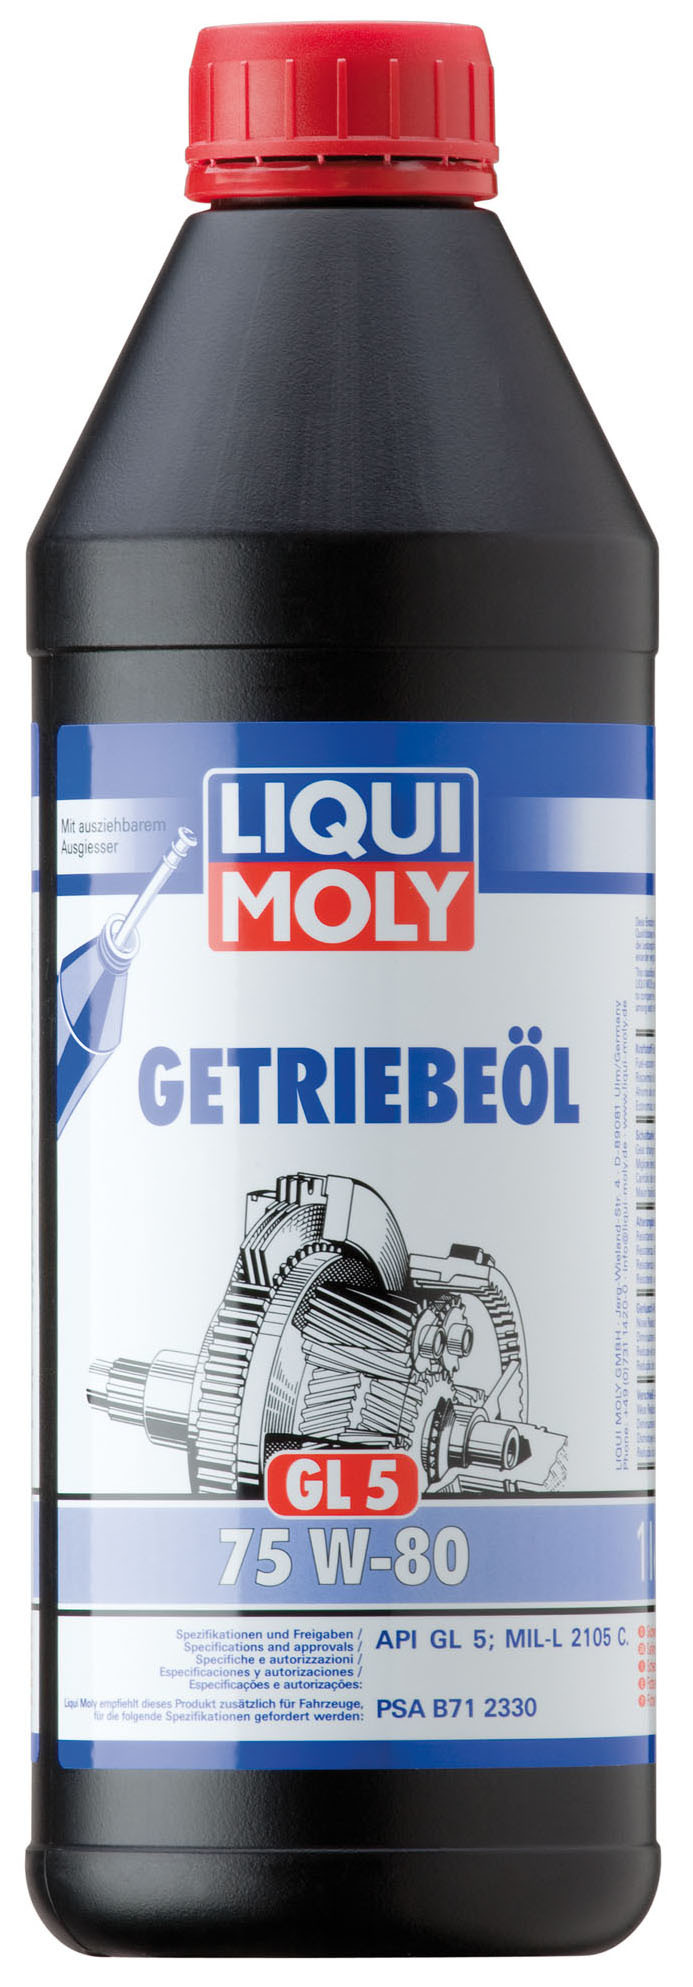 Liqui Moly Getriebeoil 75W80 (GL 5) Полусинтетическое масло